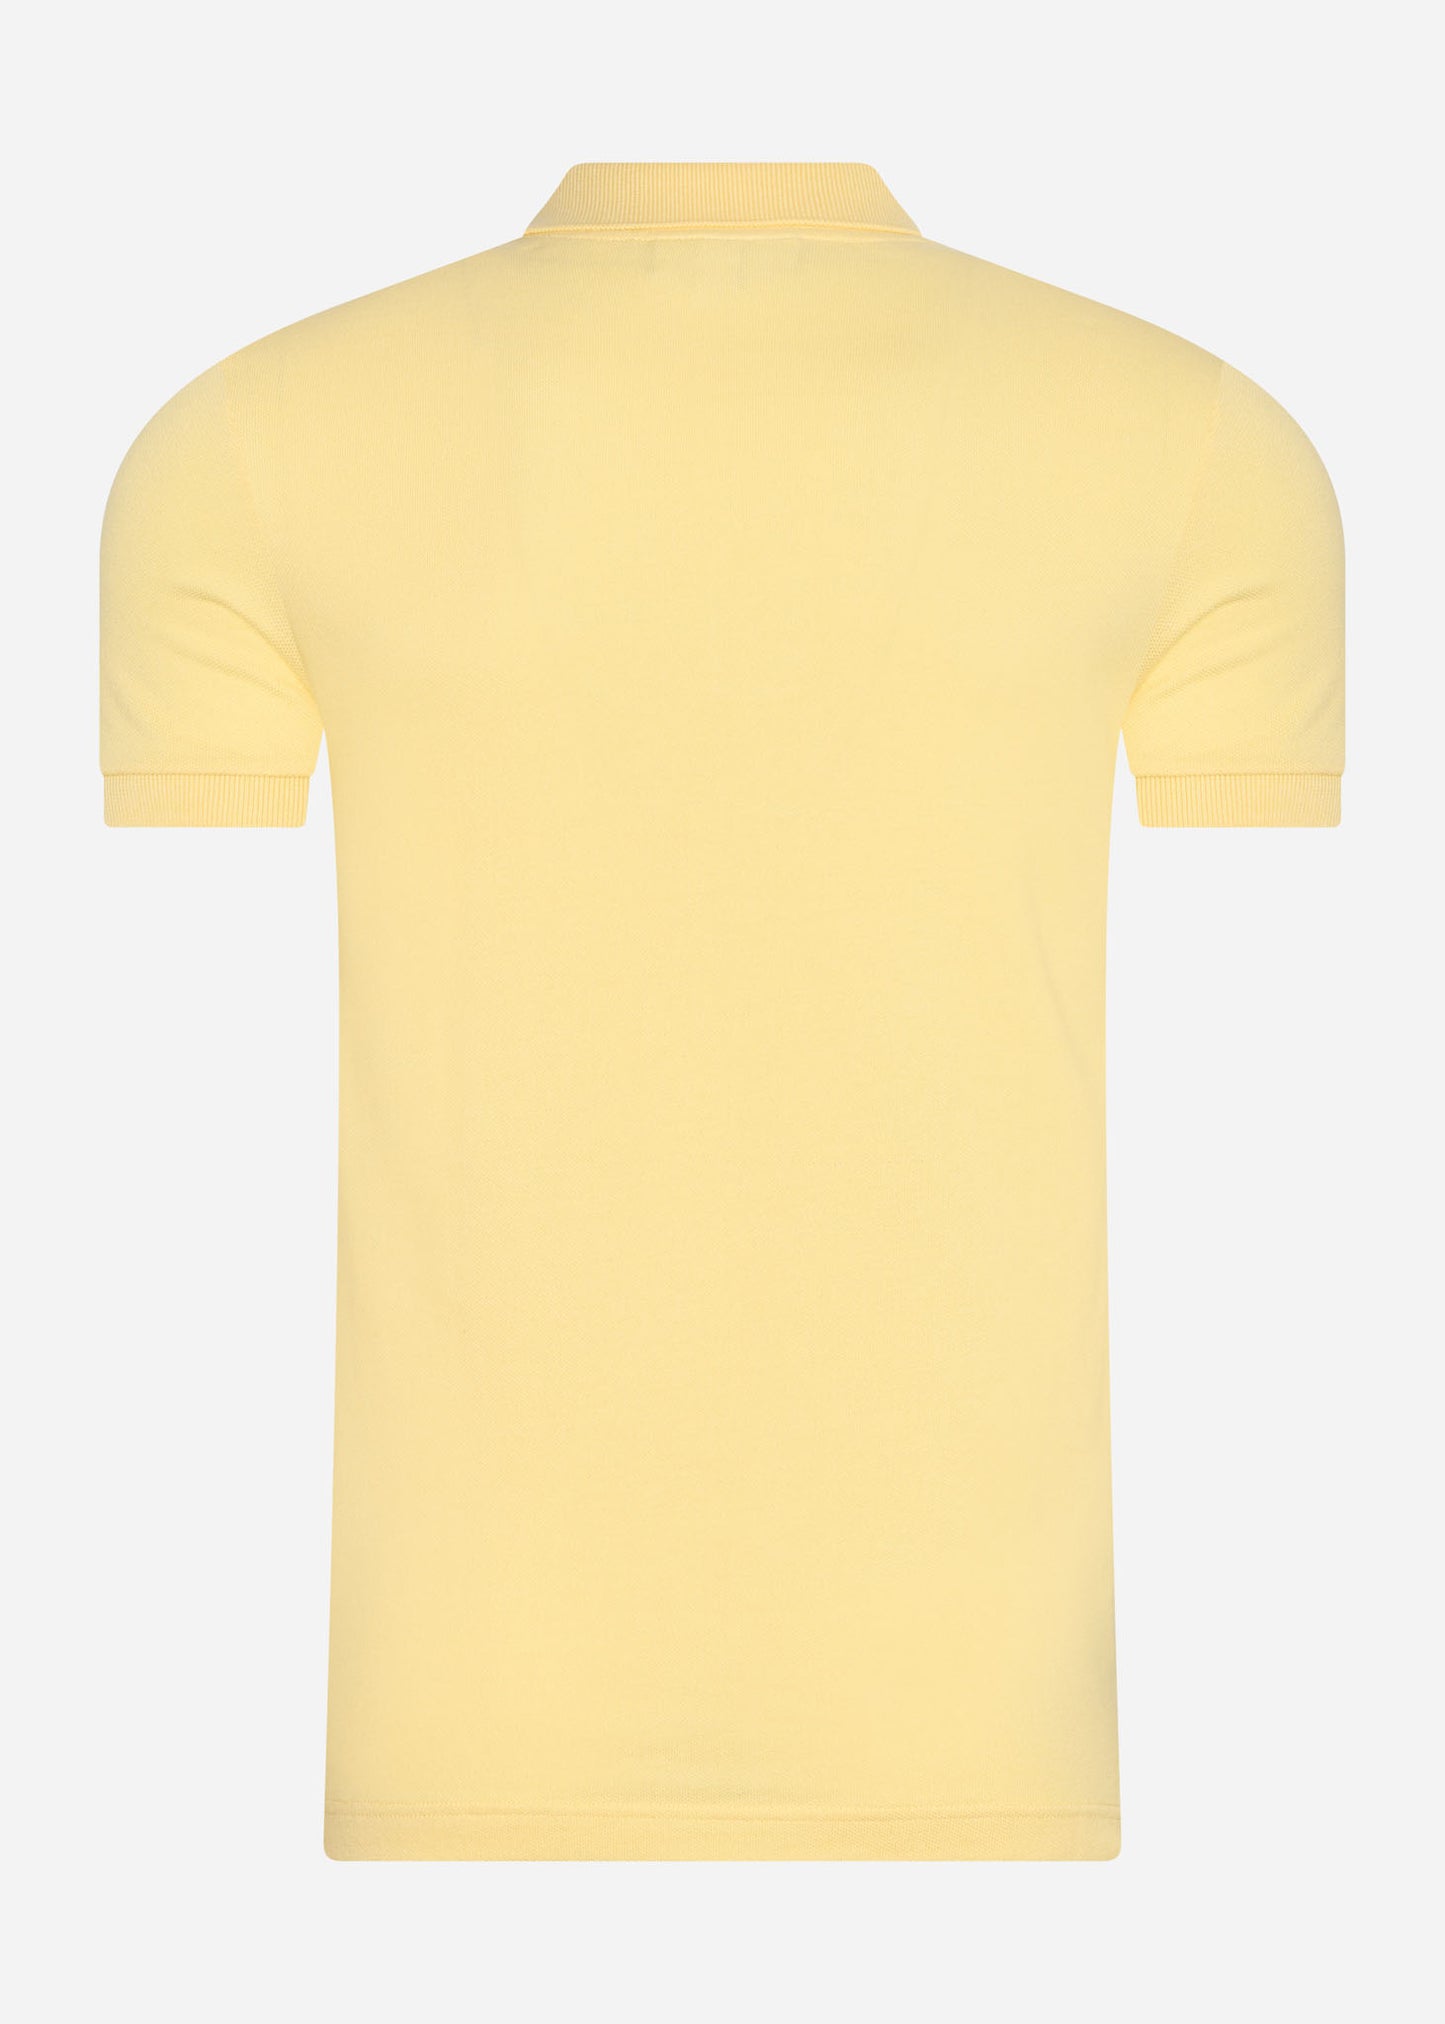 Lacoste Polo's  Polo - napolitan yellow 